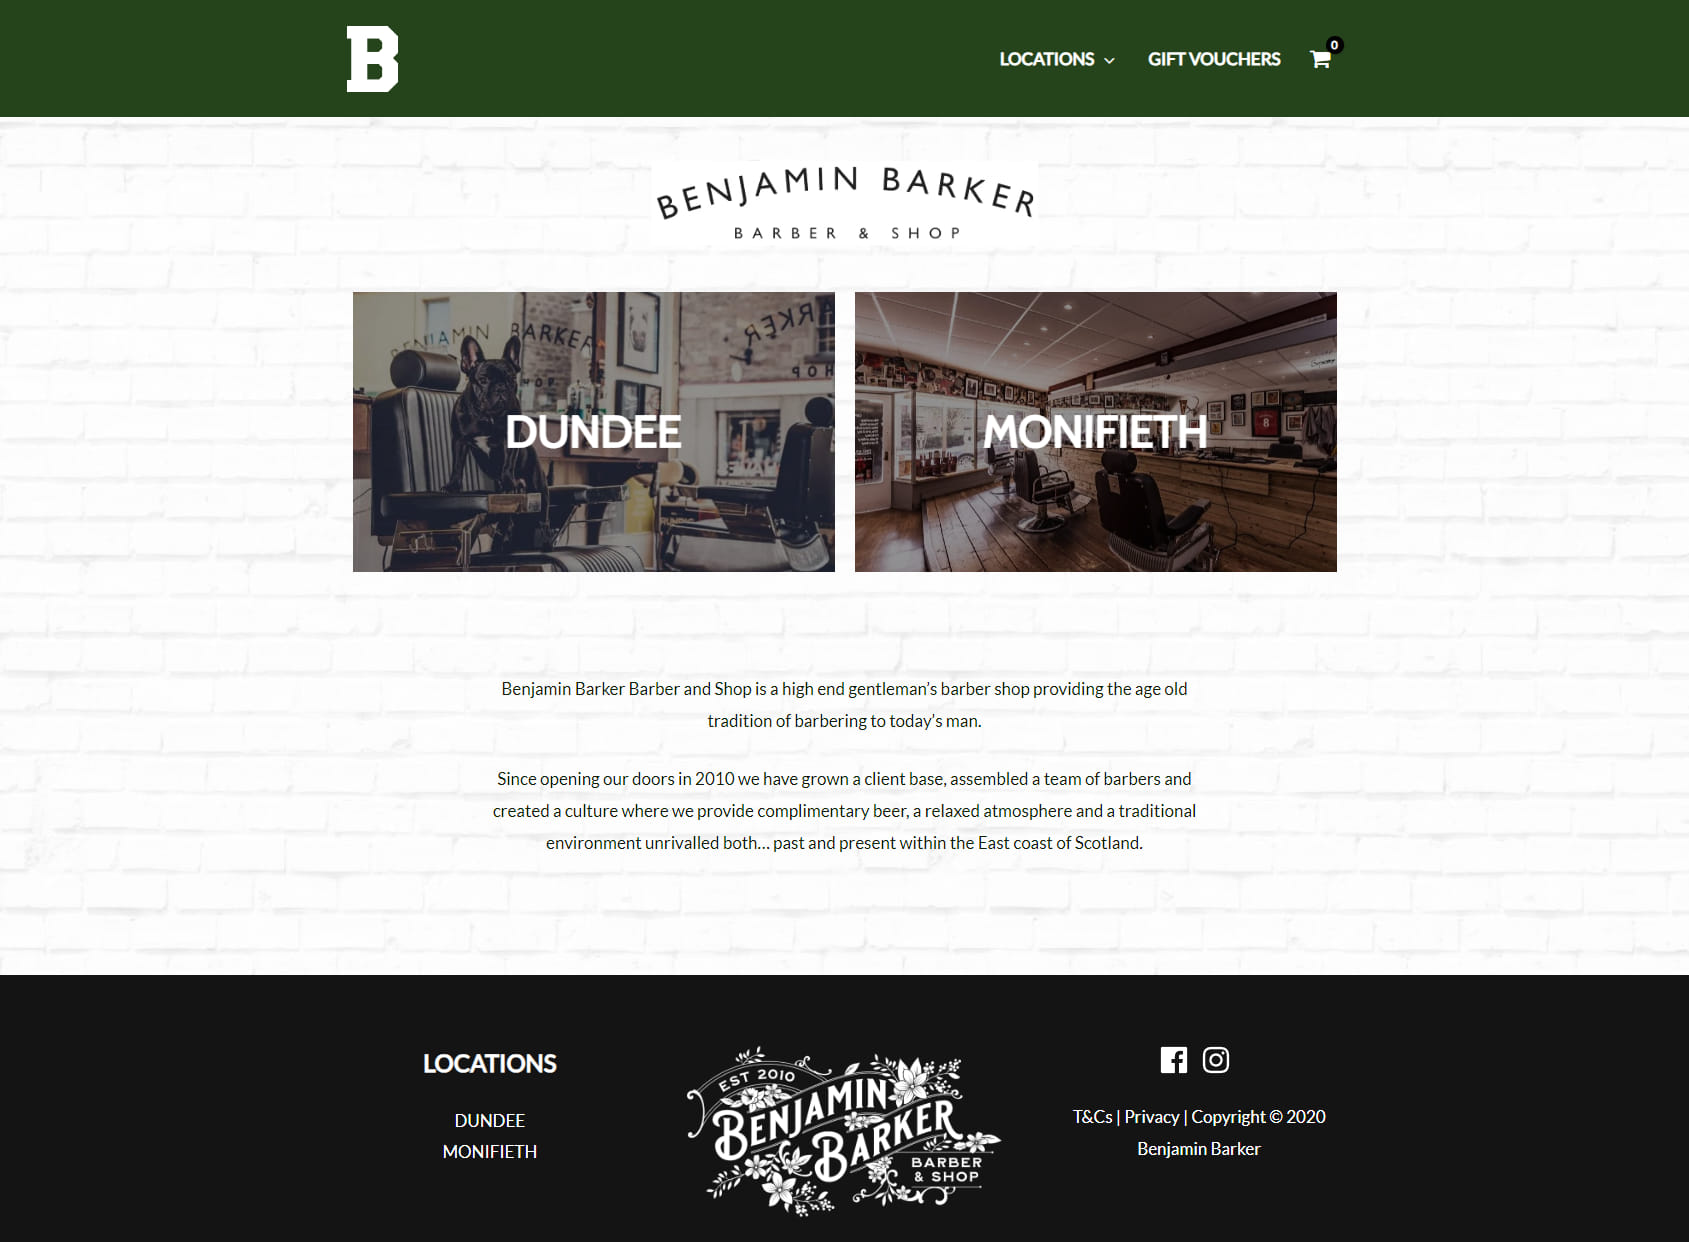 Benjamin Barker Barber & Shop Dundee